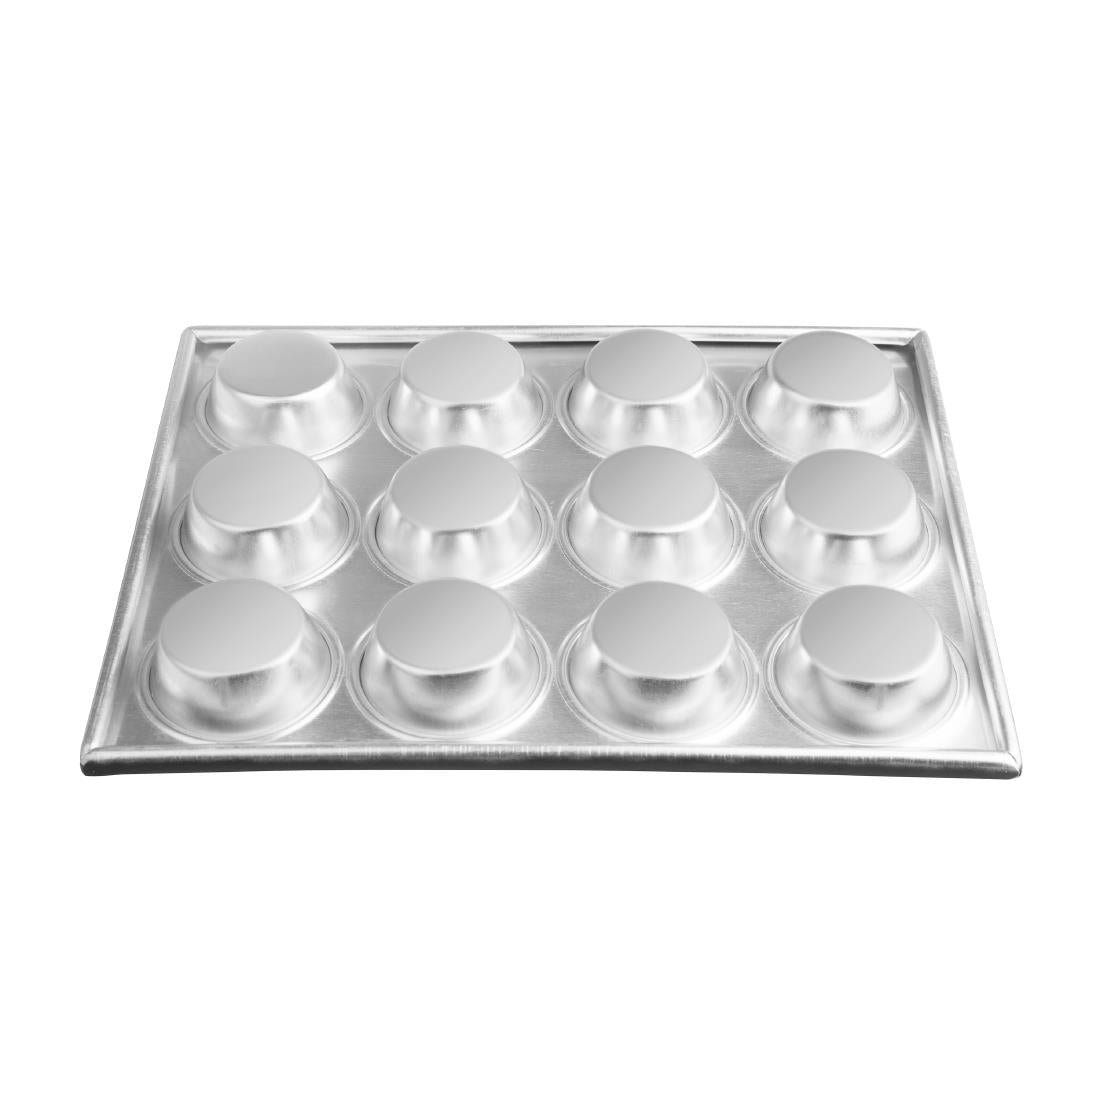 Vogue Aluminium Non-Stick Muffin Tray 12 Cup